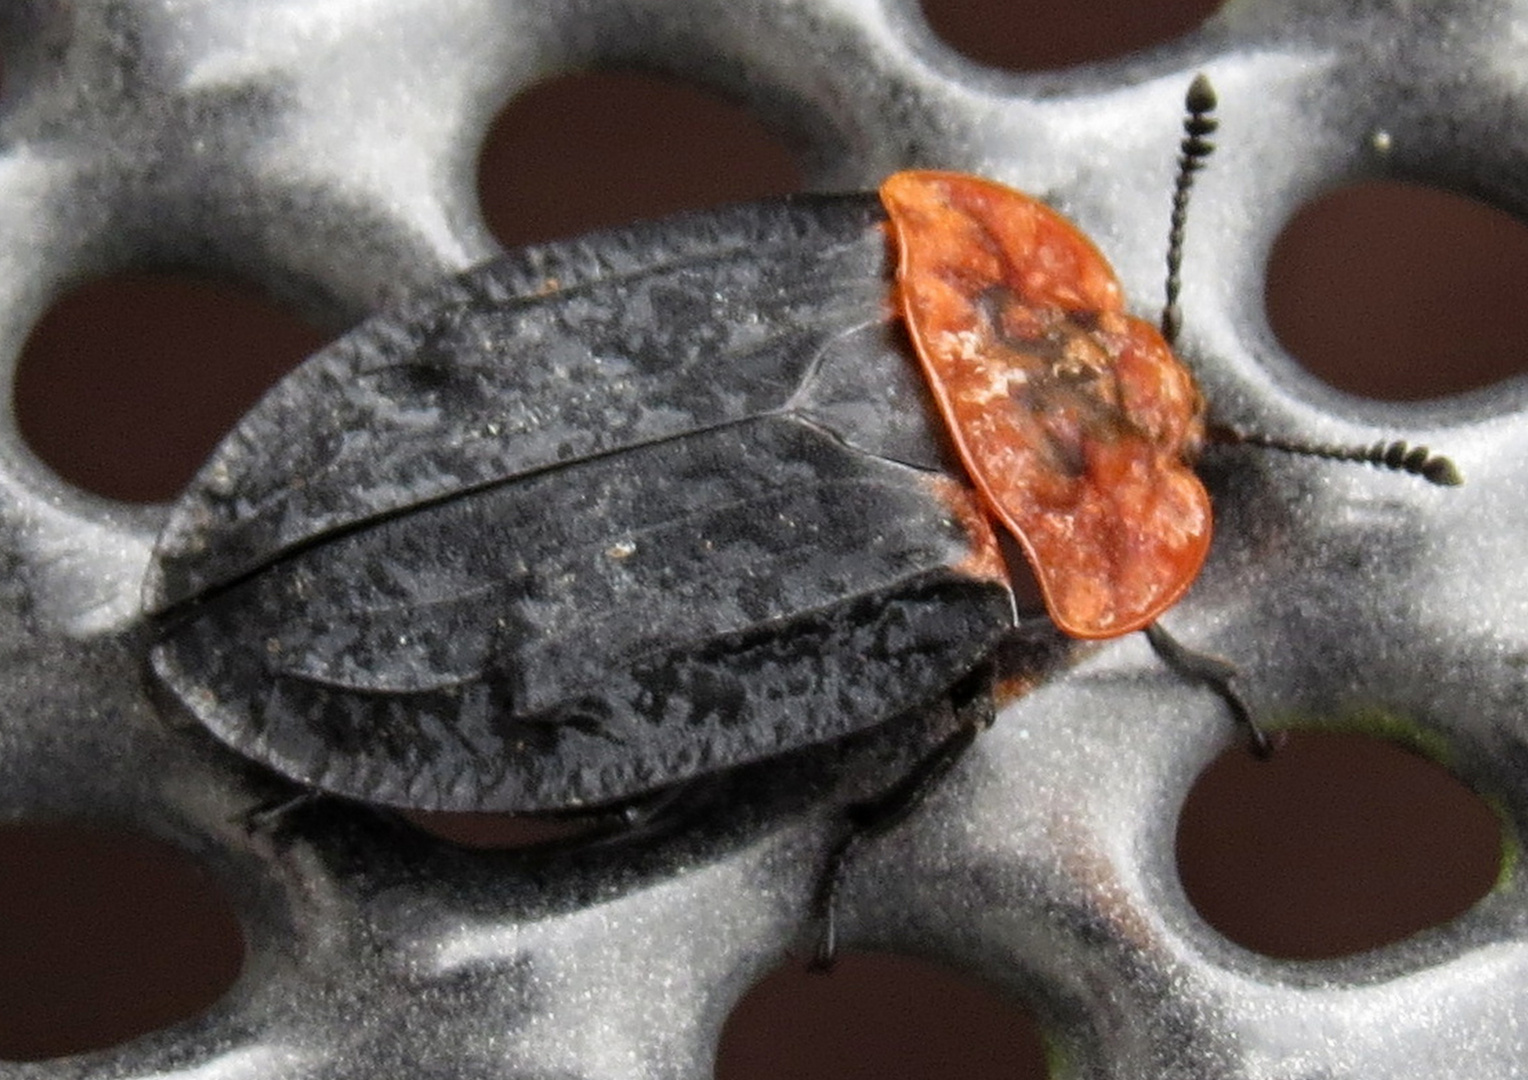 Rothalsige Silpe  (Oiceoptoma thoracium)vielen Dank an  vor dem Harz für die Auskunft